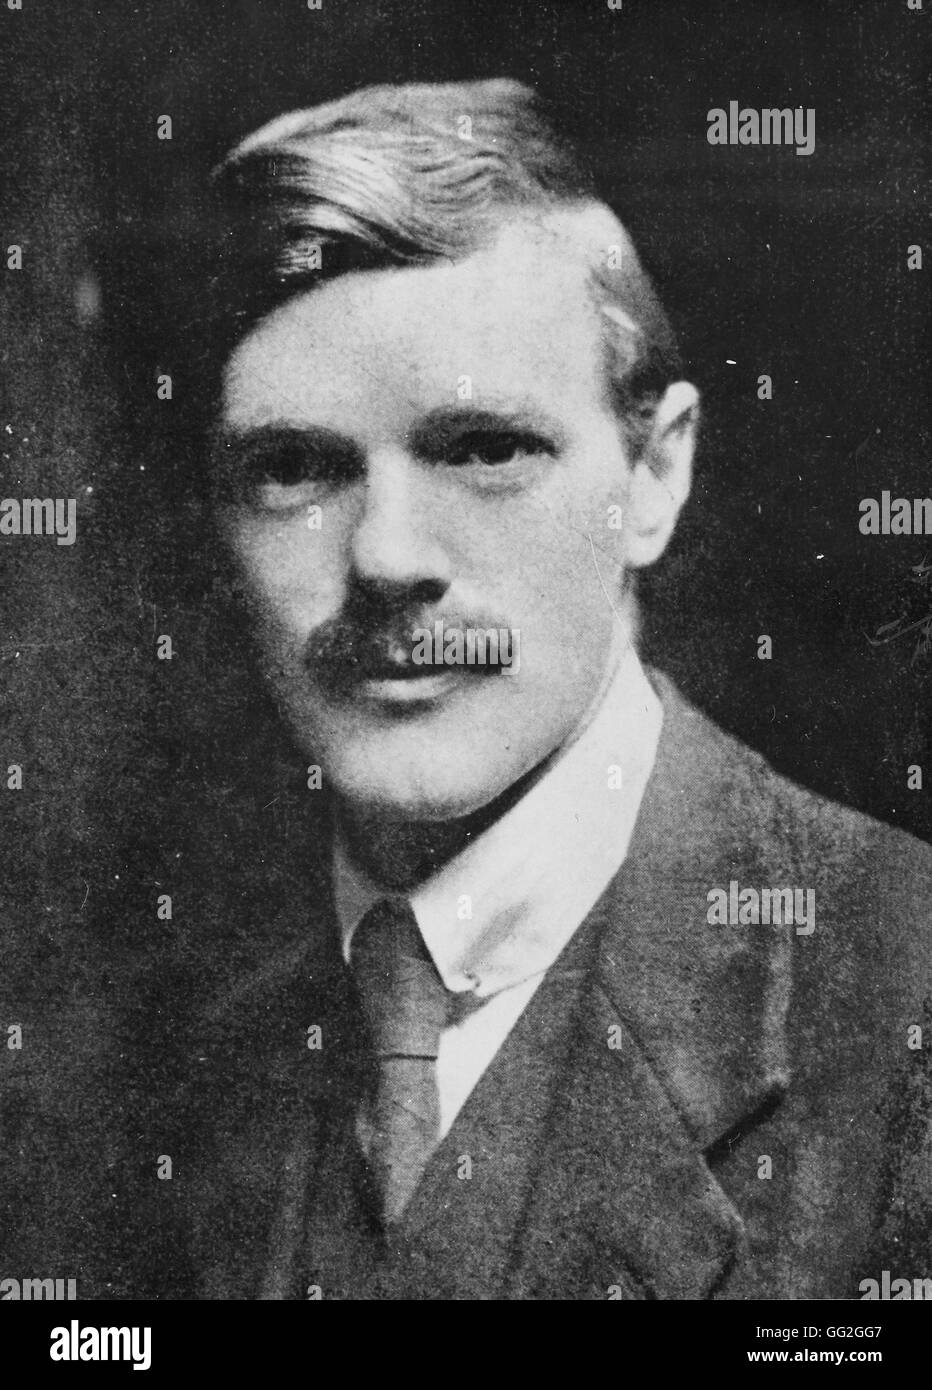 Ritratto di David Herbert Lawrence, autore britannico. Fotografia scattata nel 1914 Foto Stock